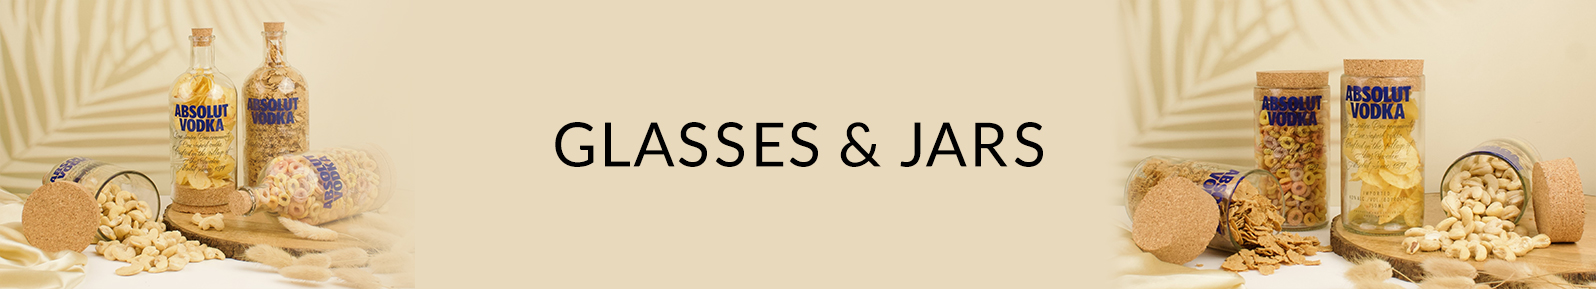 Glasses & Jars